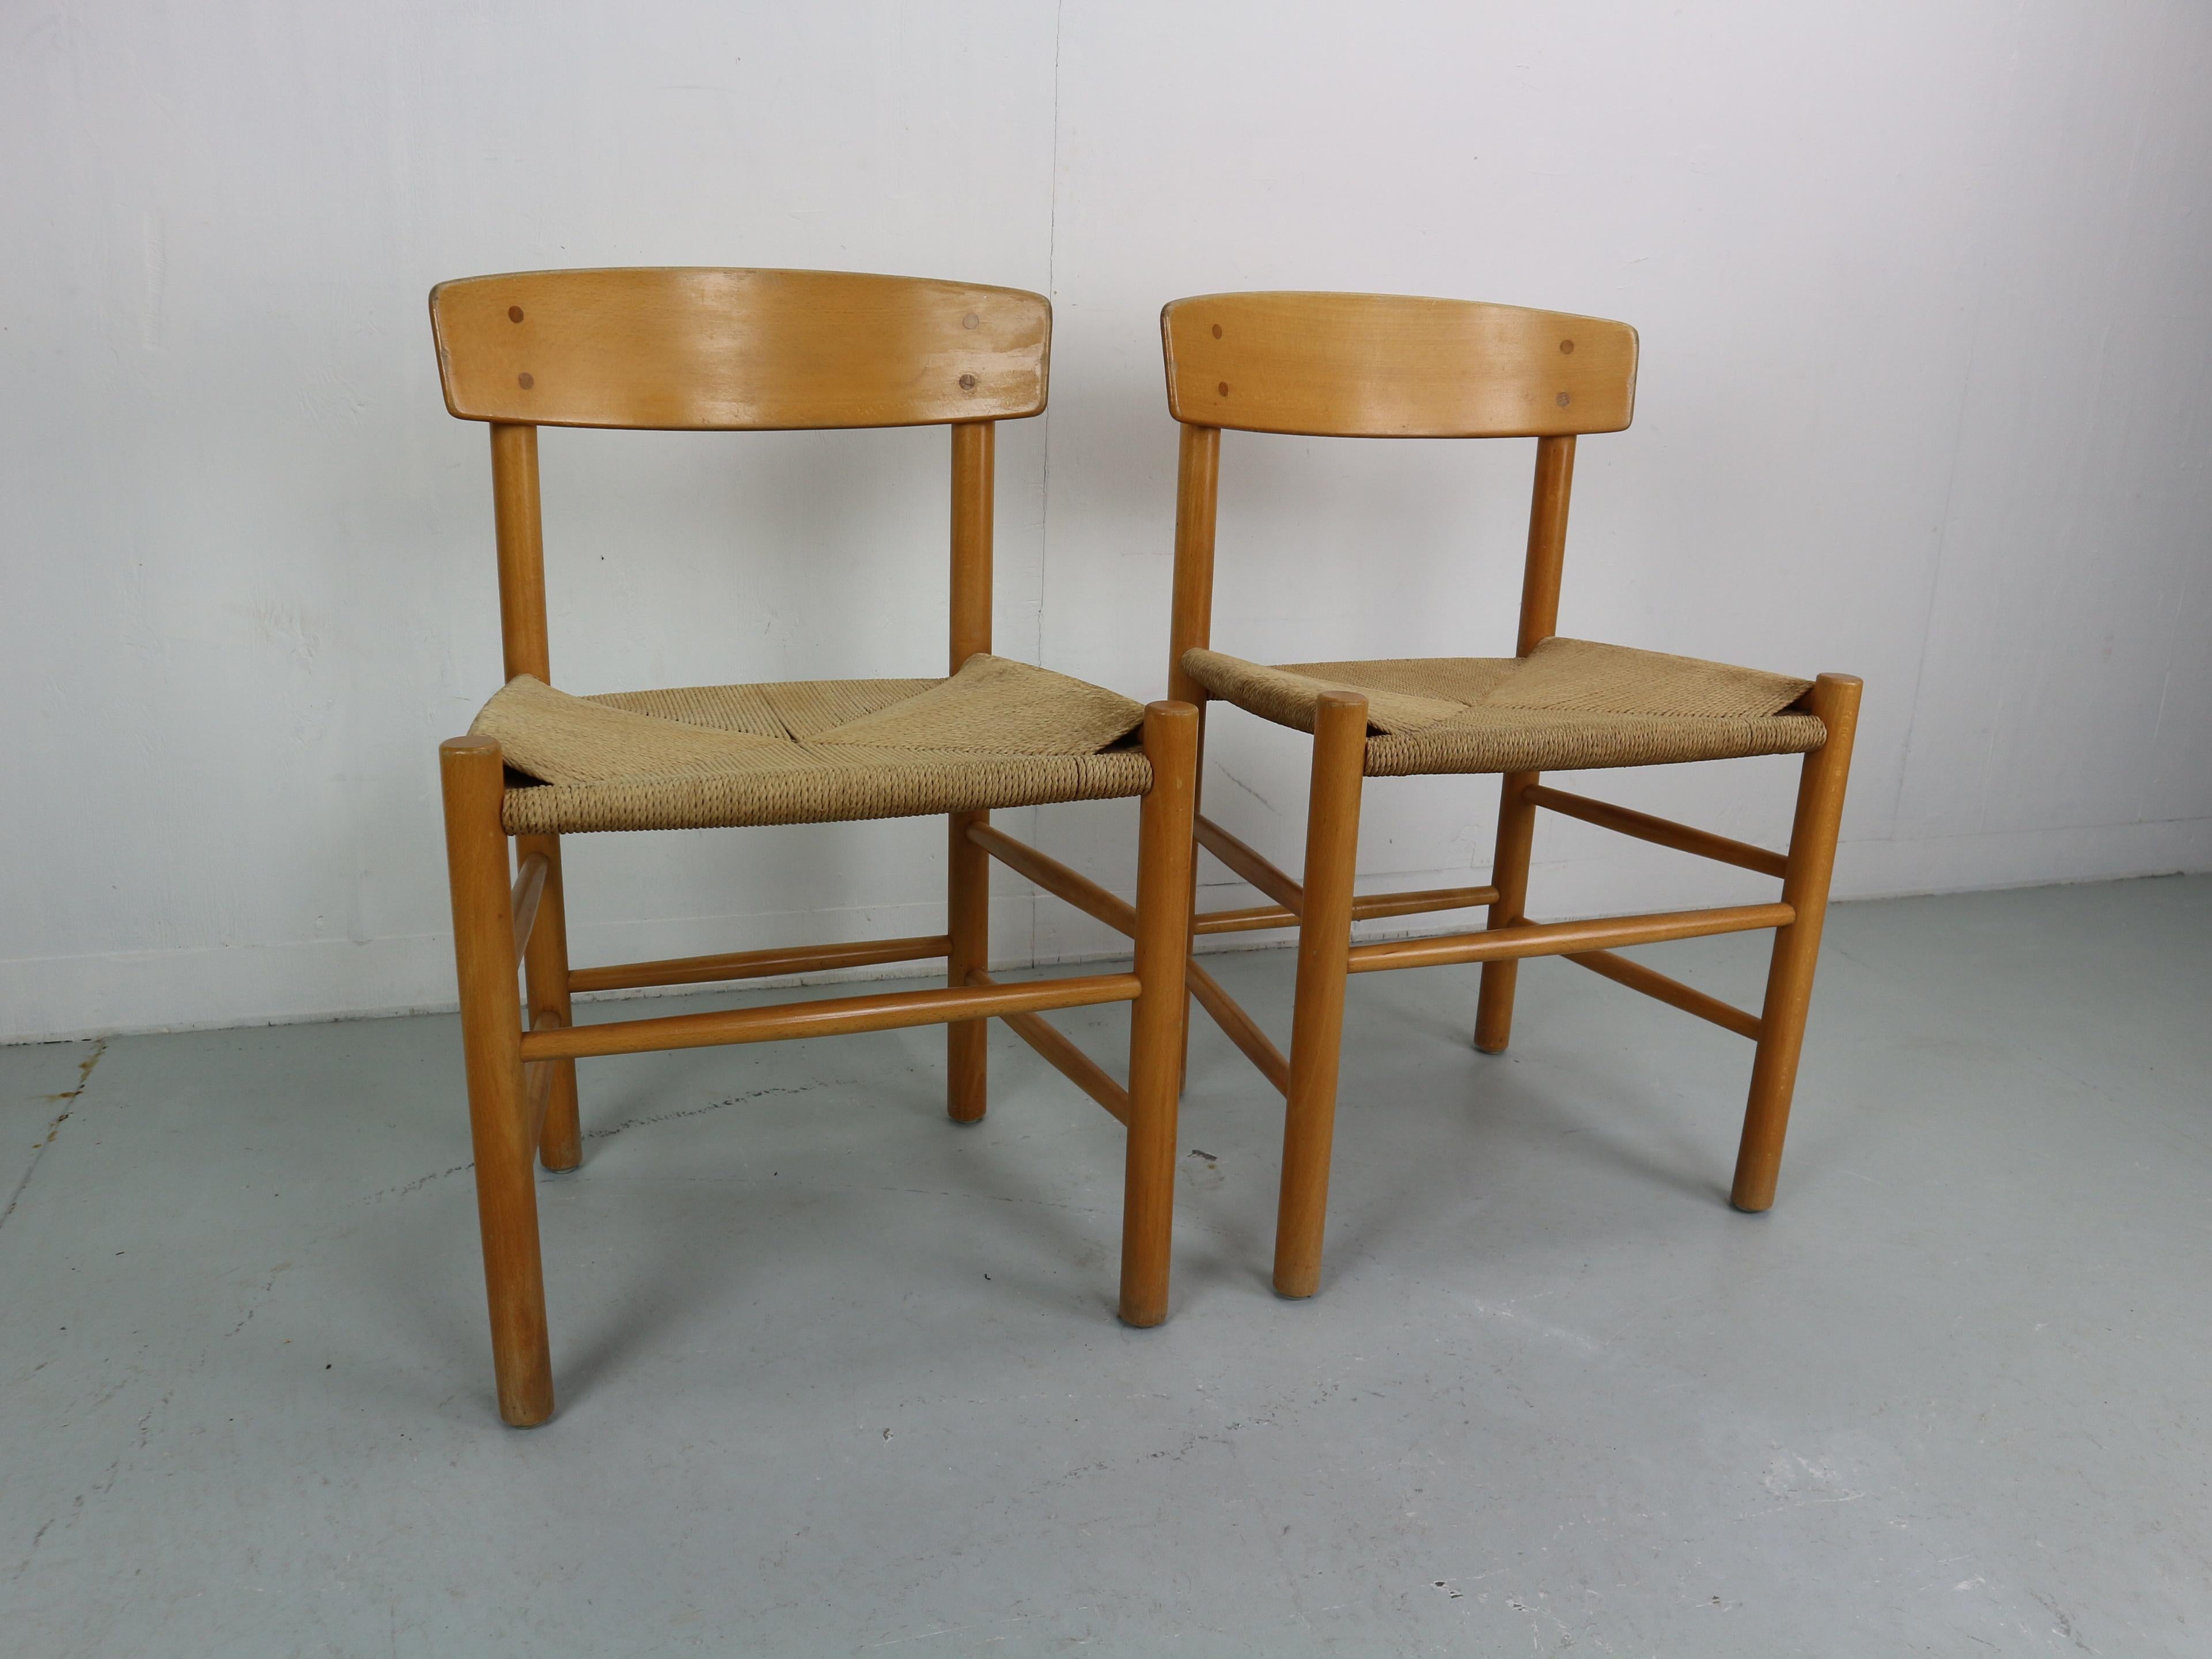 Der Stuhl J39 wurde von Borge Mogensen entworfen und von FDB Mobler seit 1947 hergestellt.
Diese Stühle sind alt und die erste Produktion von FDB Mobler. Das Design wurde von den amerikanischen Shaker-Möbeln inspiriert.
Es ist aus massiver Eiche